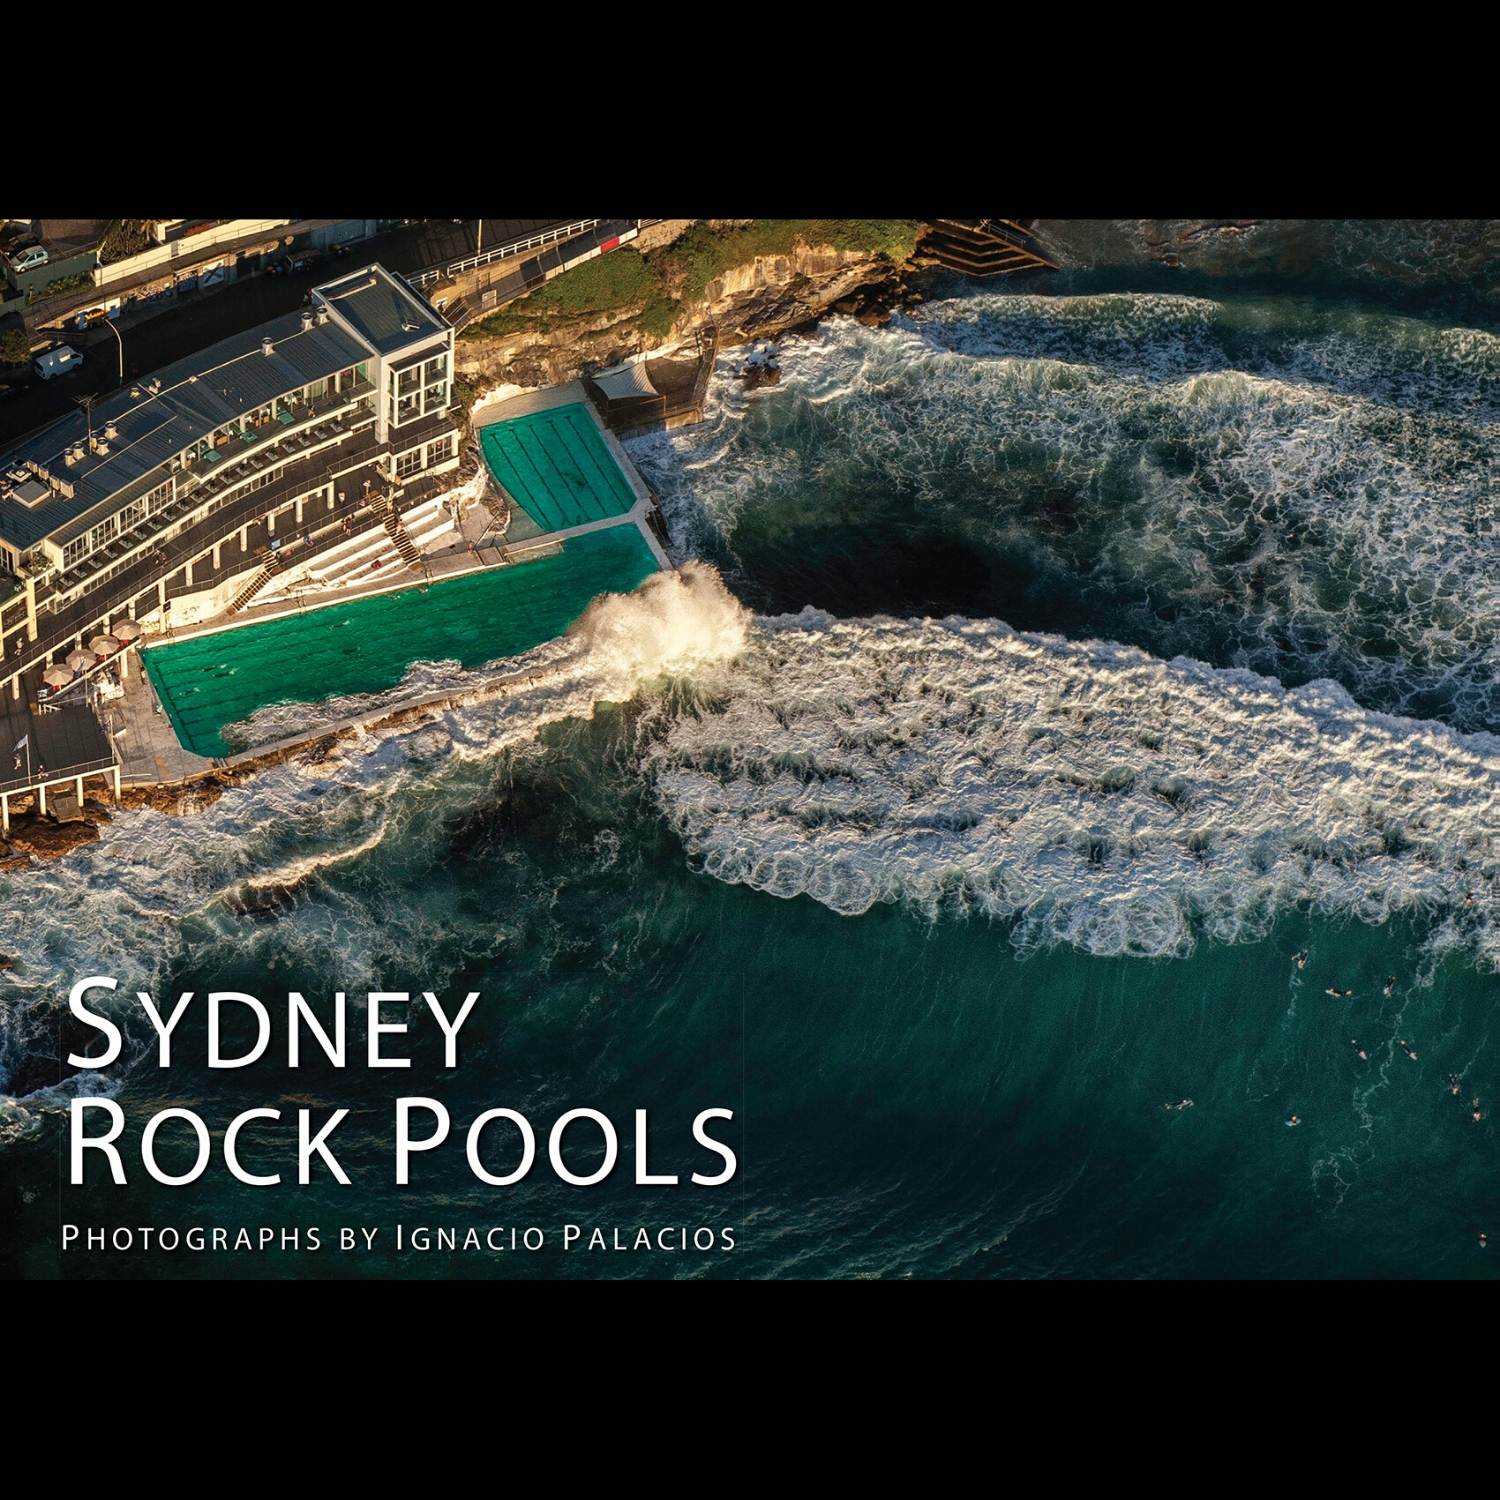 Photography Book of the Sydney Rock Pools by Ignacio Palacios